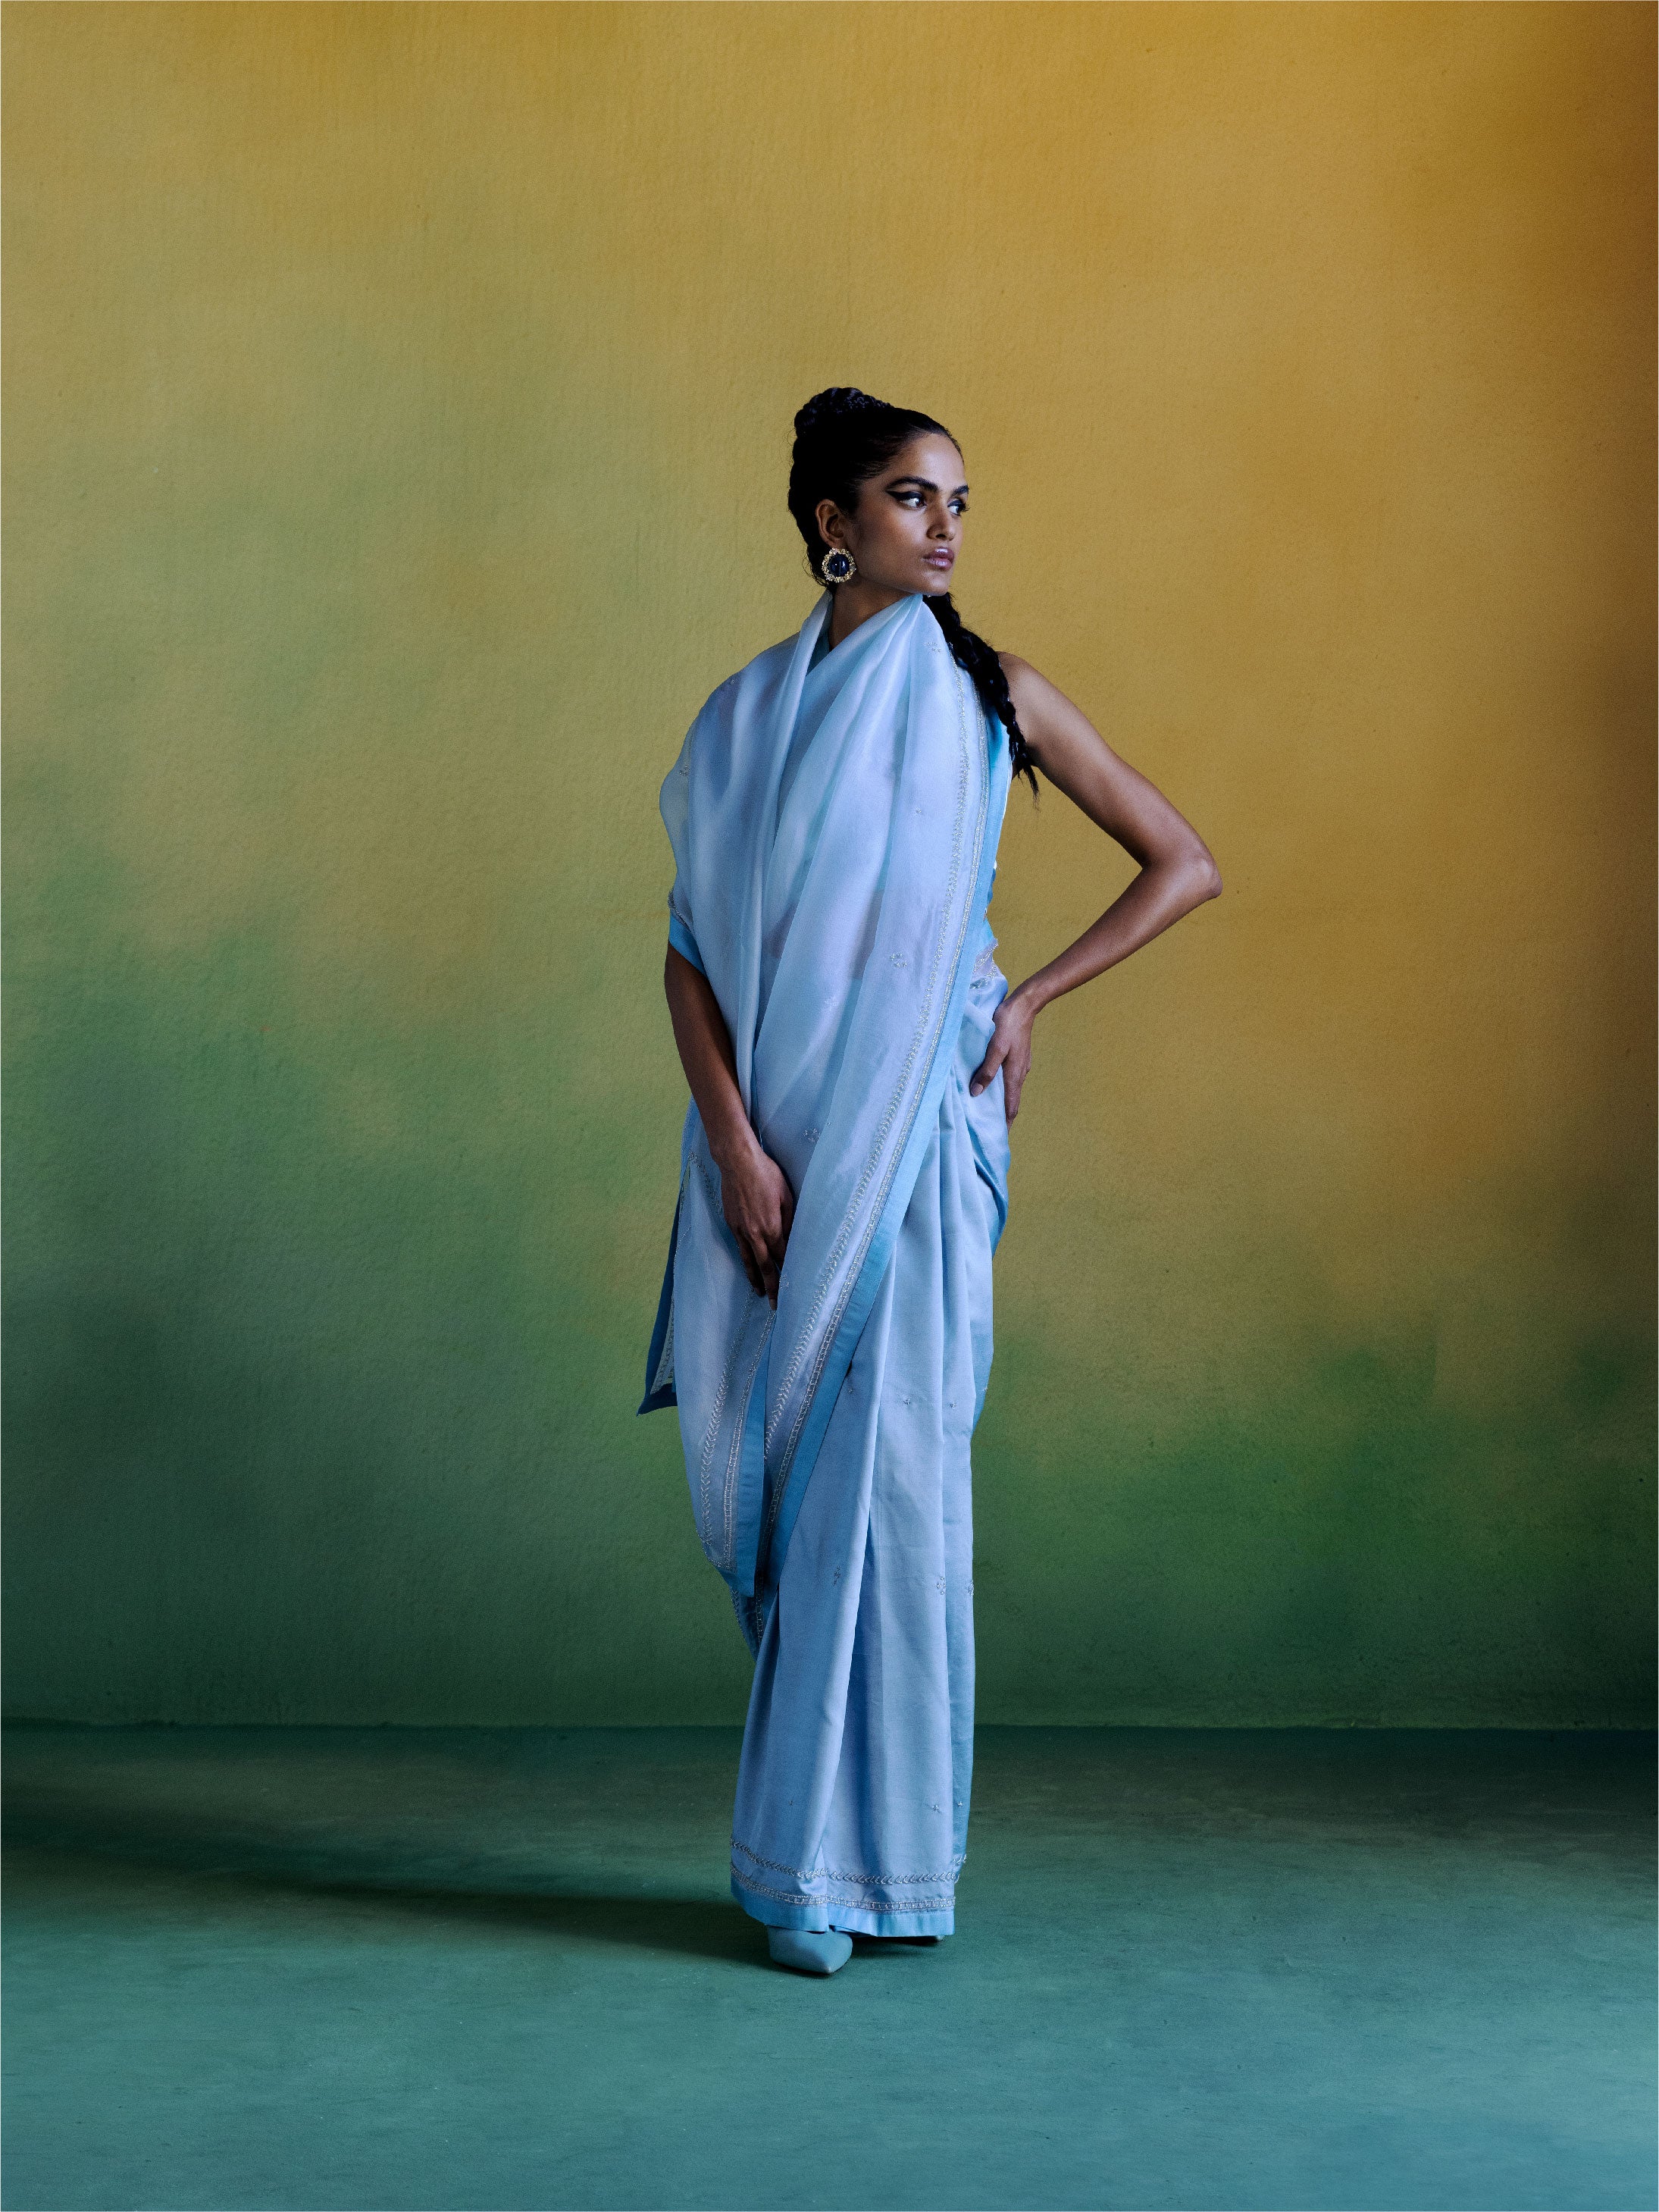 Sari with standing pose Stock Photos - Page 1 : Masterfile